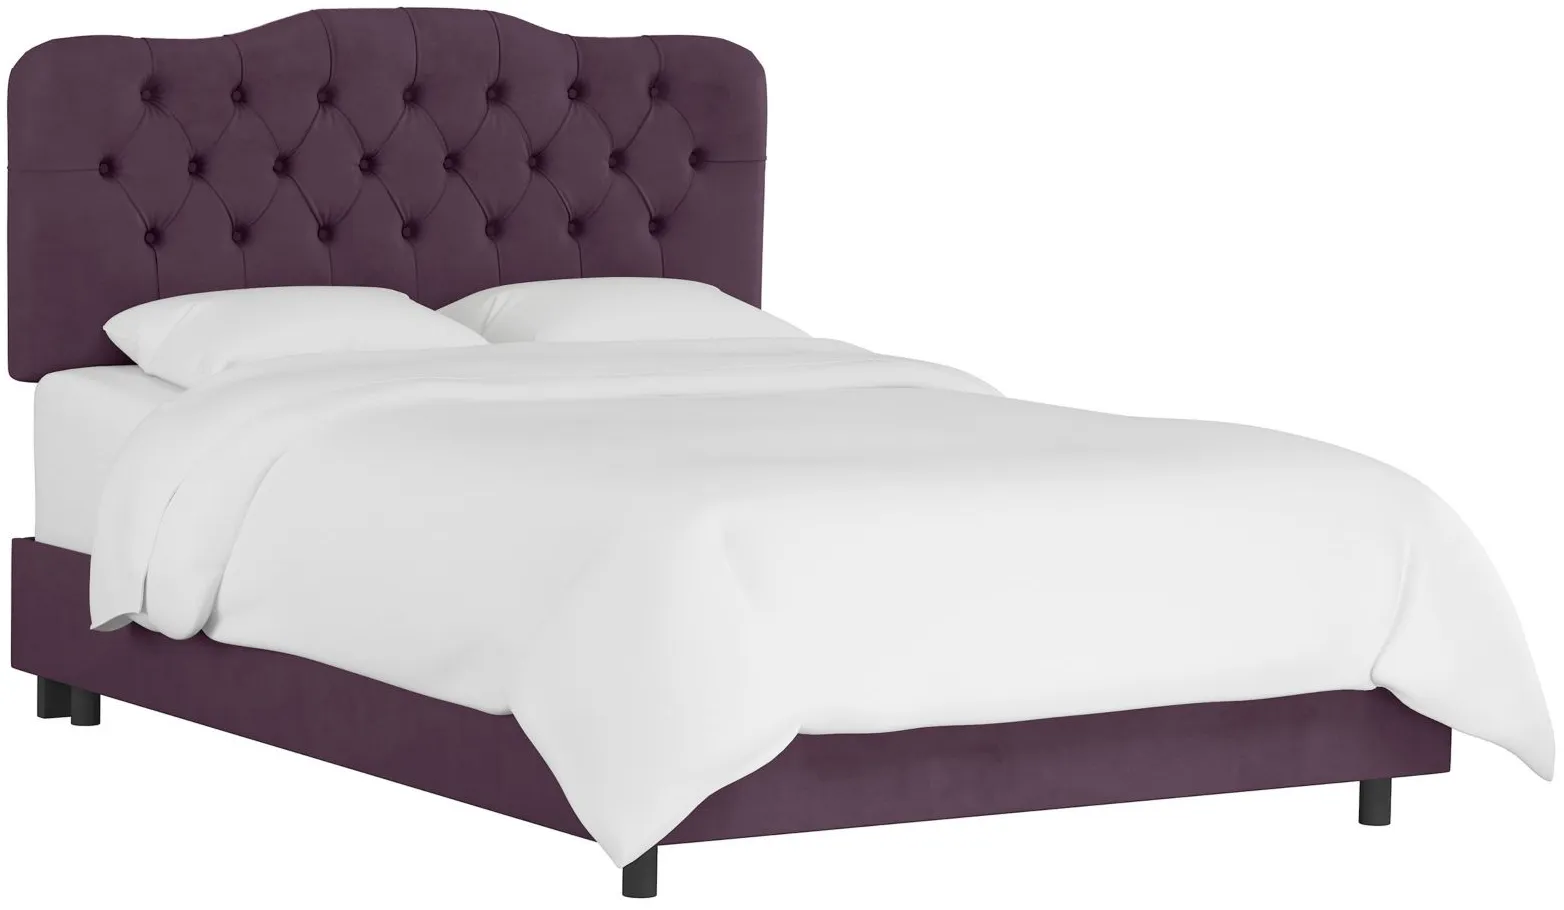 Argona Bed in Velvet Aubergine by Skyline